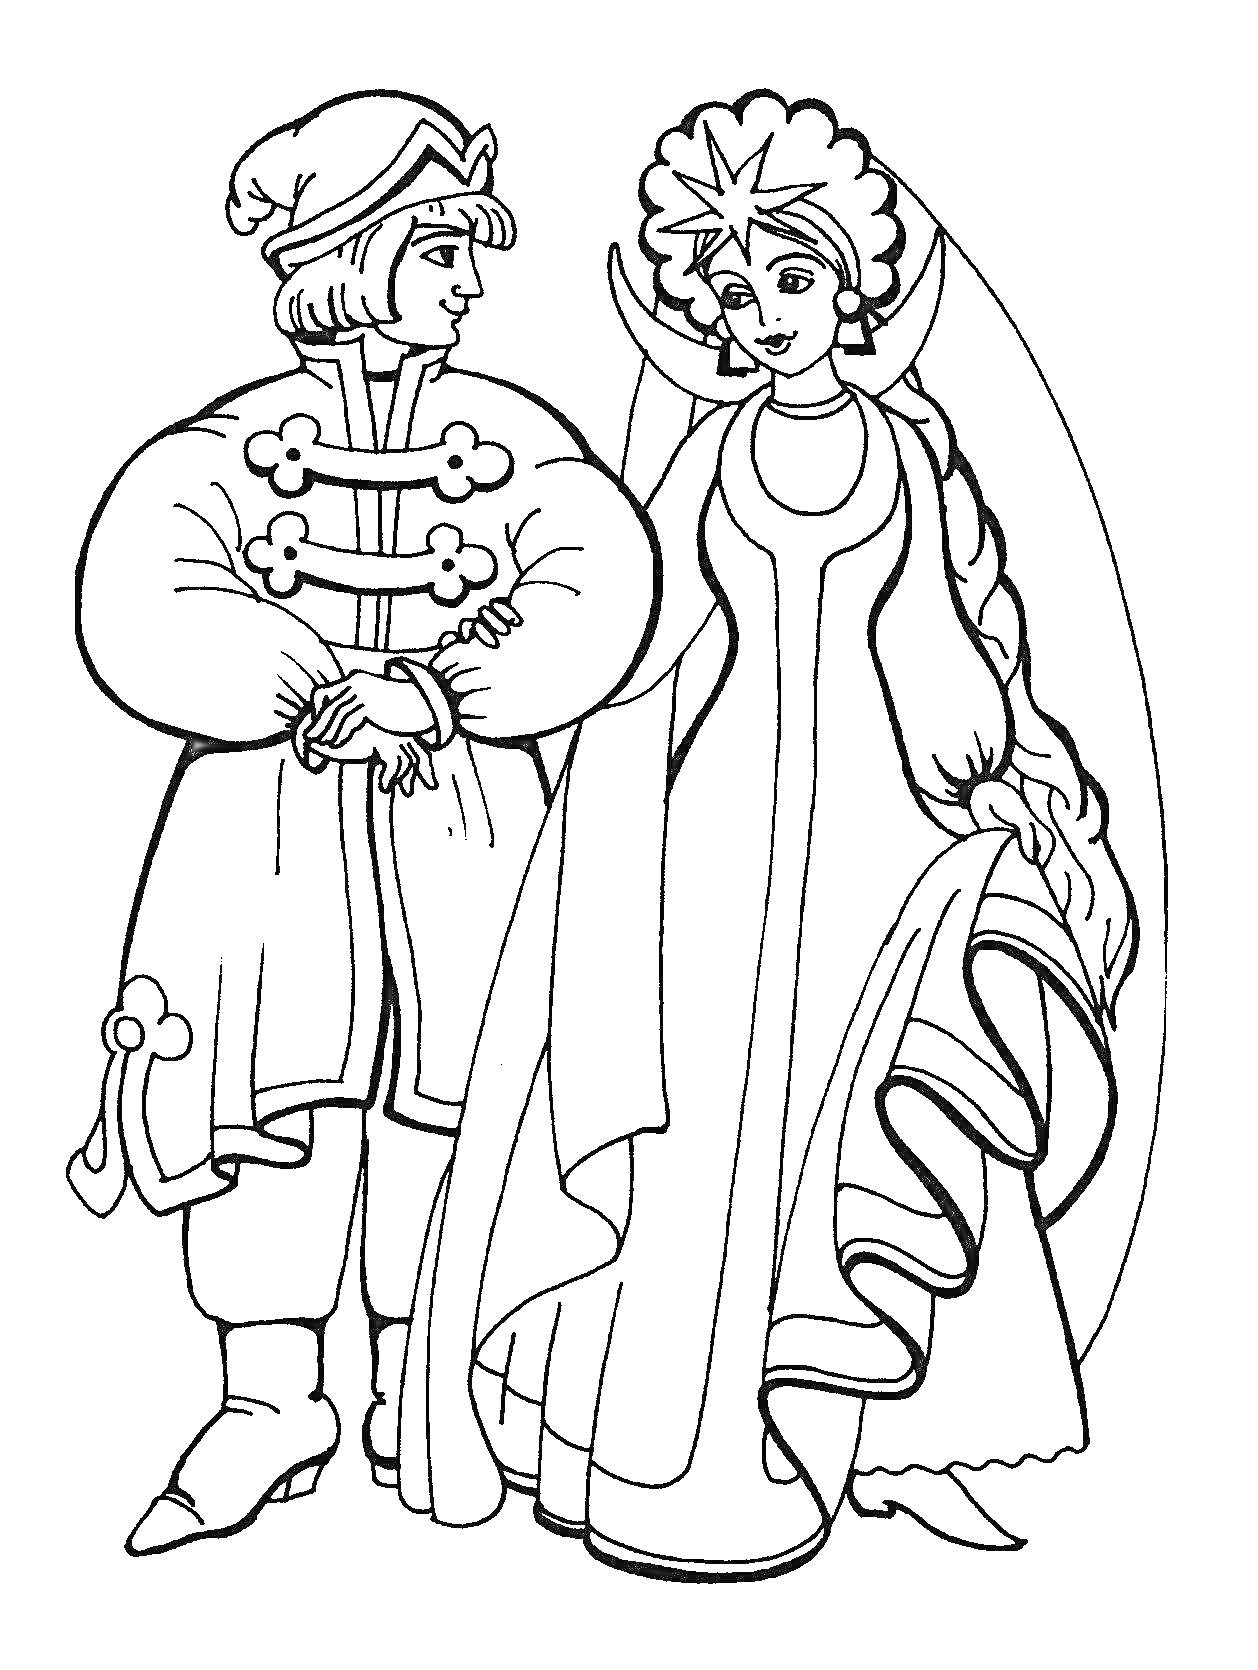 Царевна в короне и традиционном платье идет под руку с молодым человеком в традиционной одежде